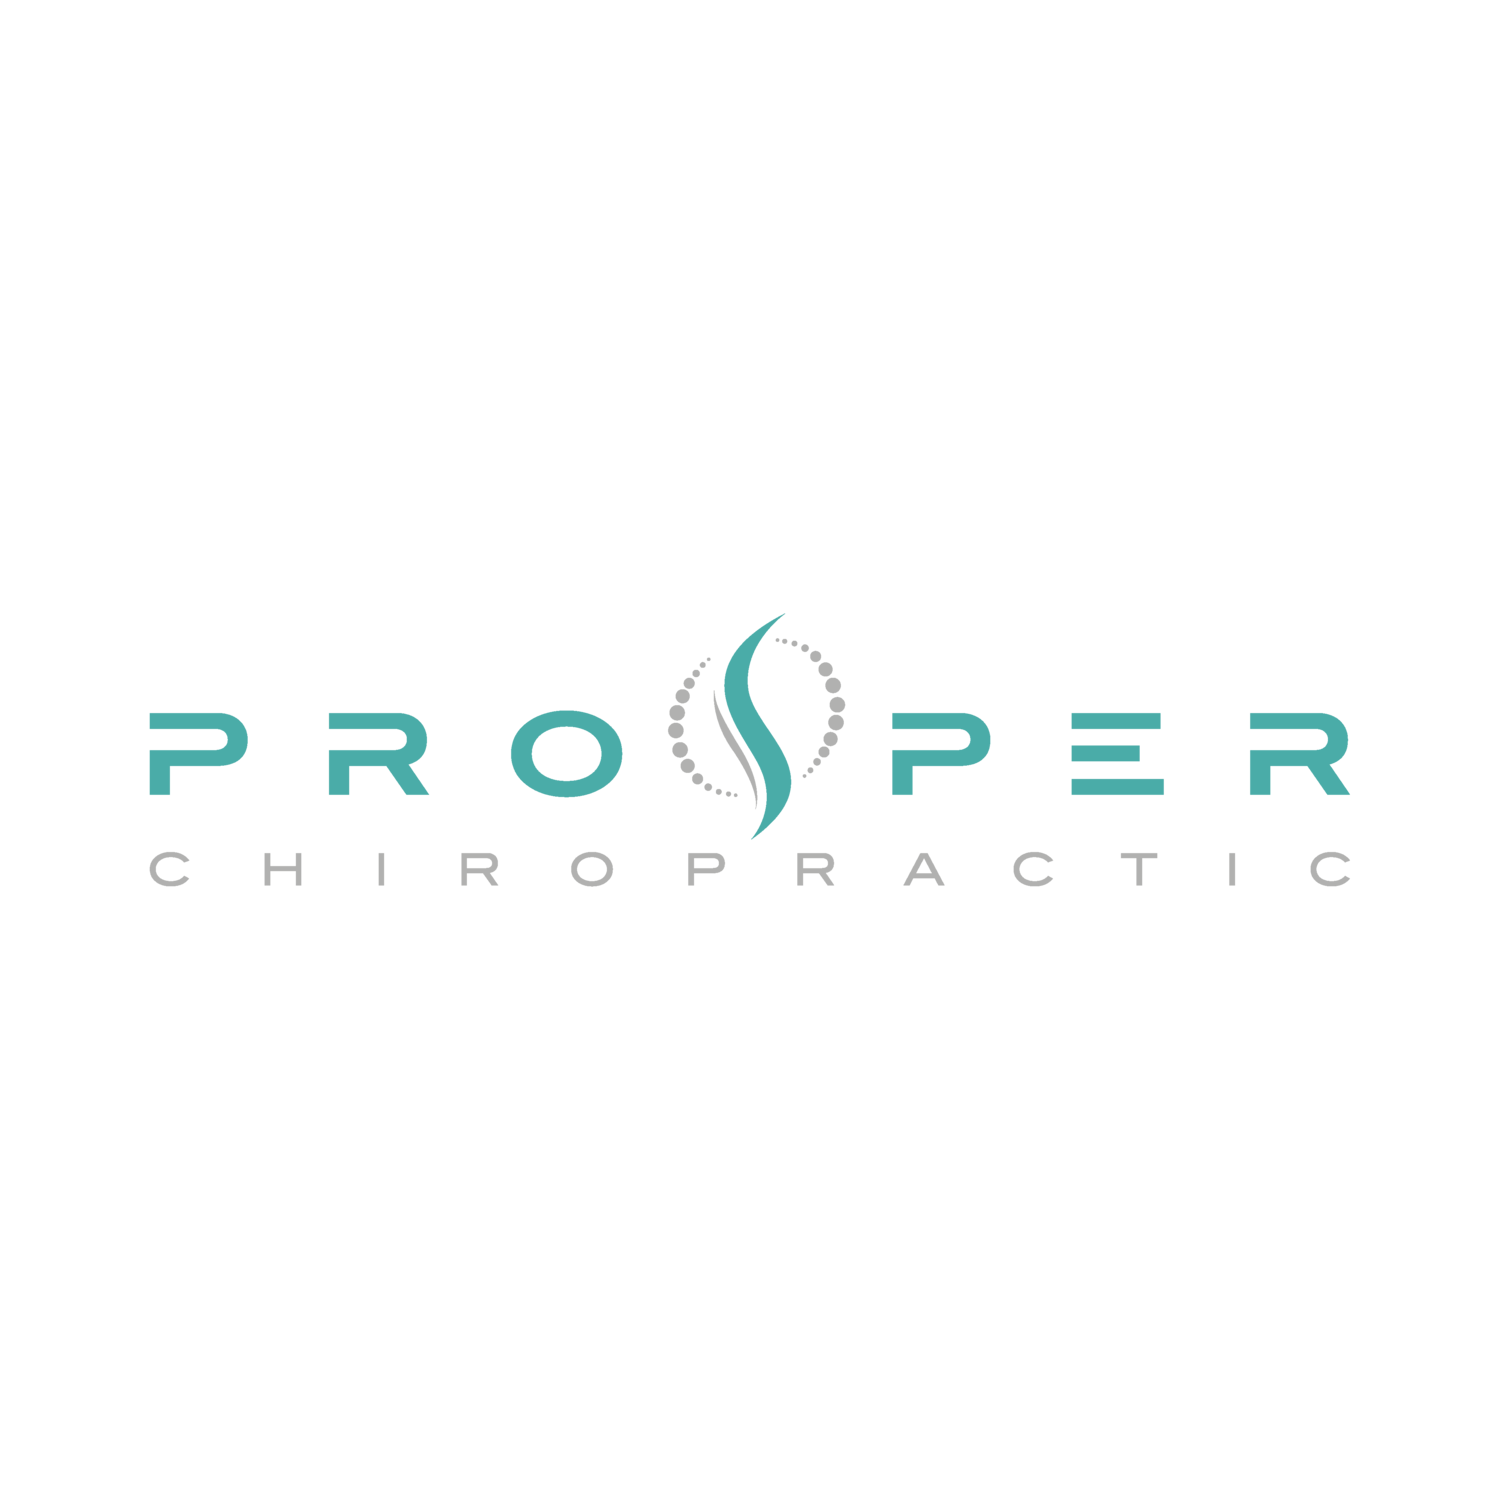 Prosper Chiropractic